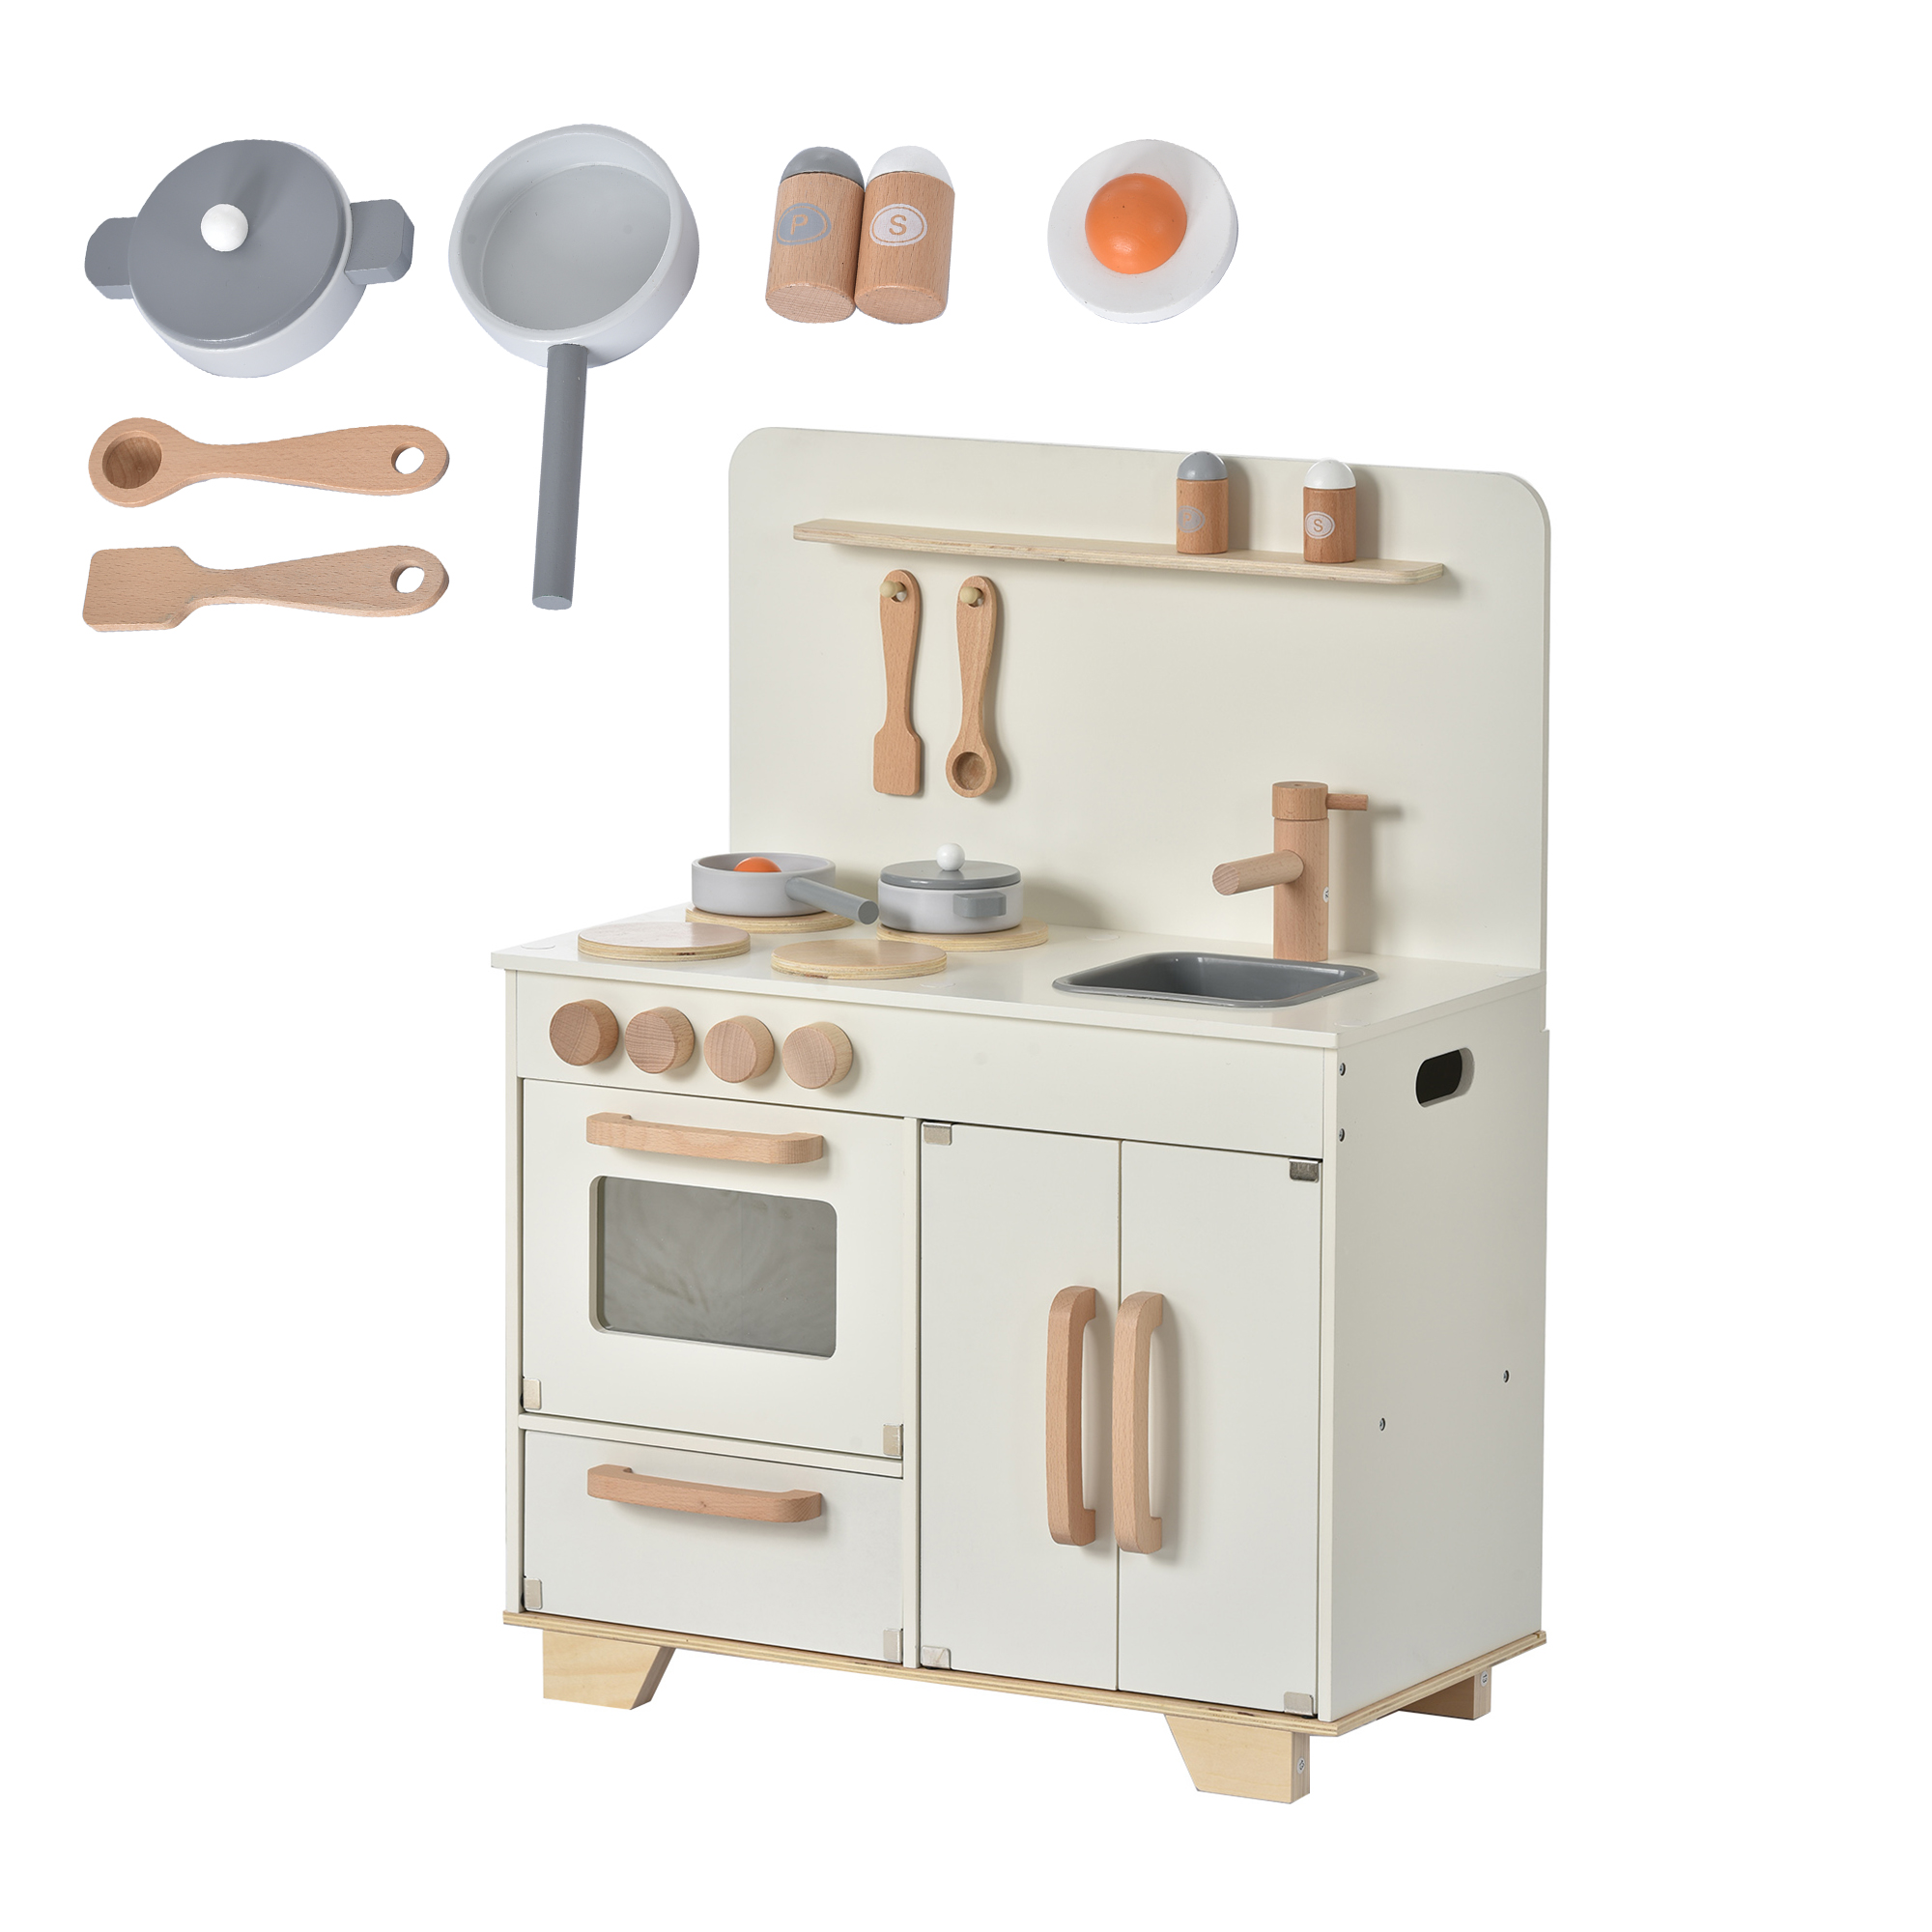 おままごと キッチン 木製 誕生日 調理器具付き 知育玩具 コンロミニ